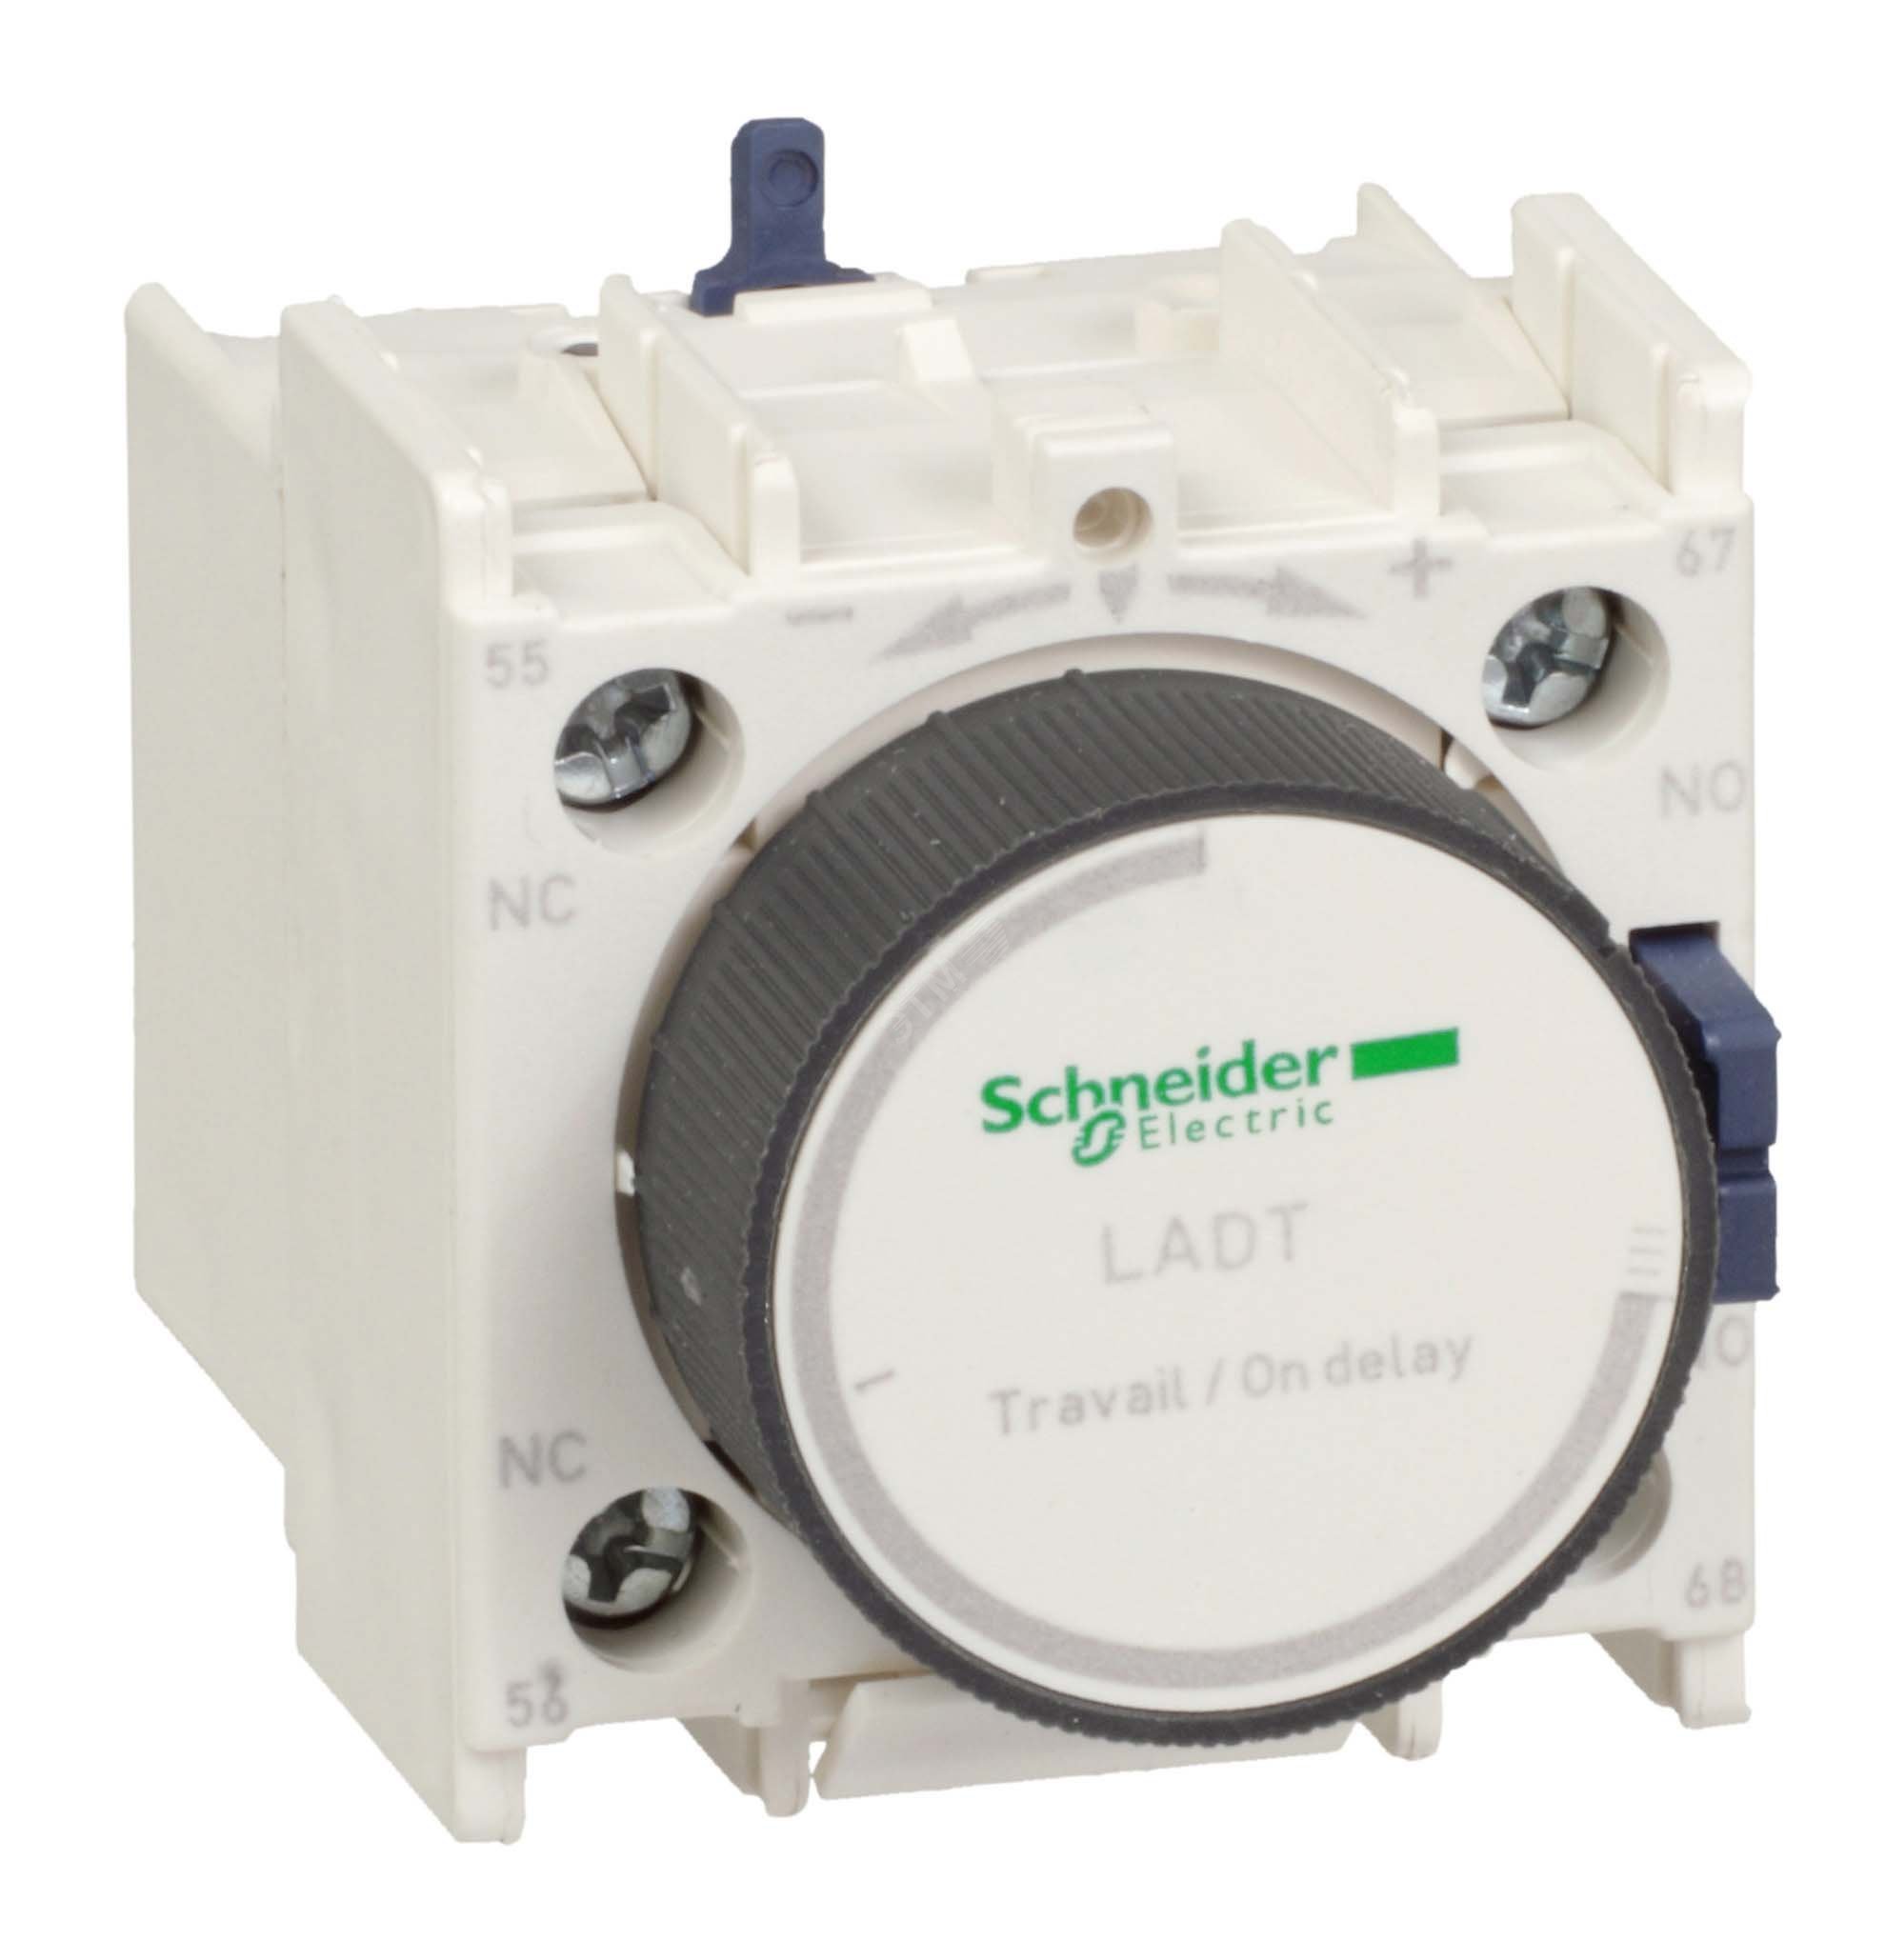 Блок контактный с задержкой при включении 0.1-30с LADT2 Schneider Electric - превью